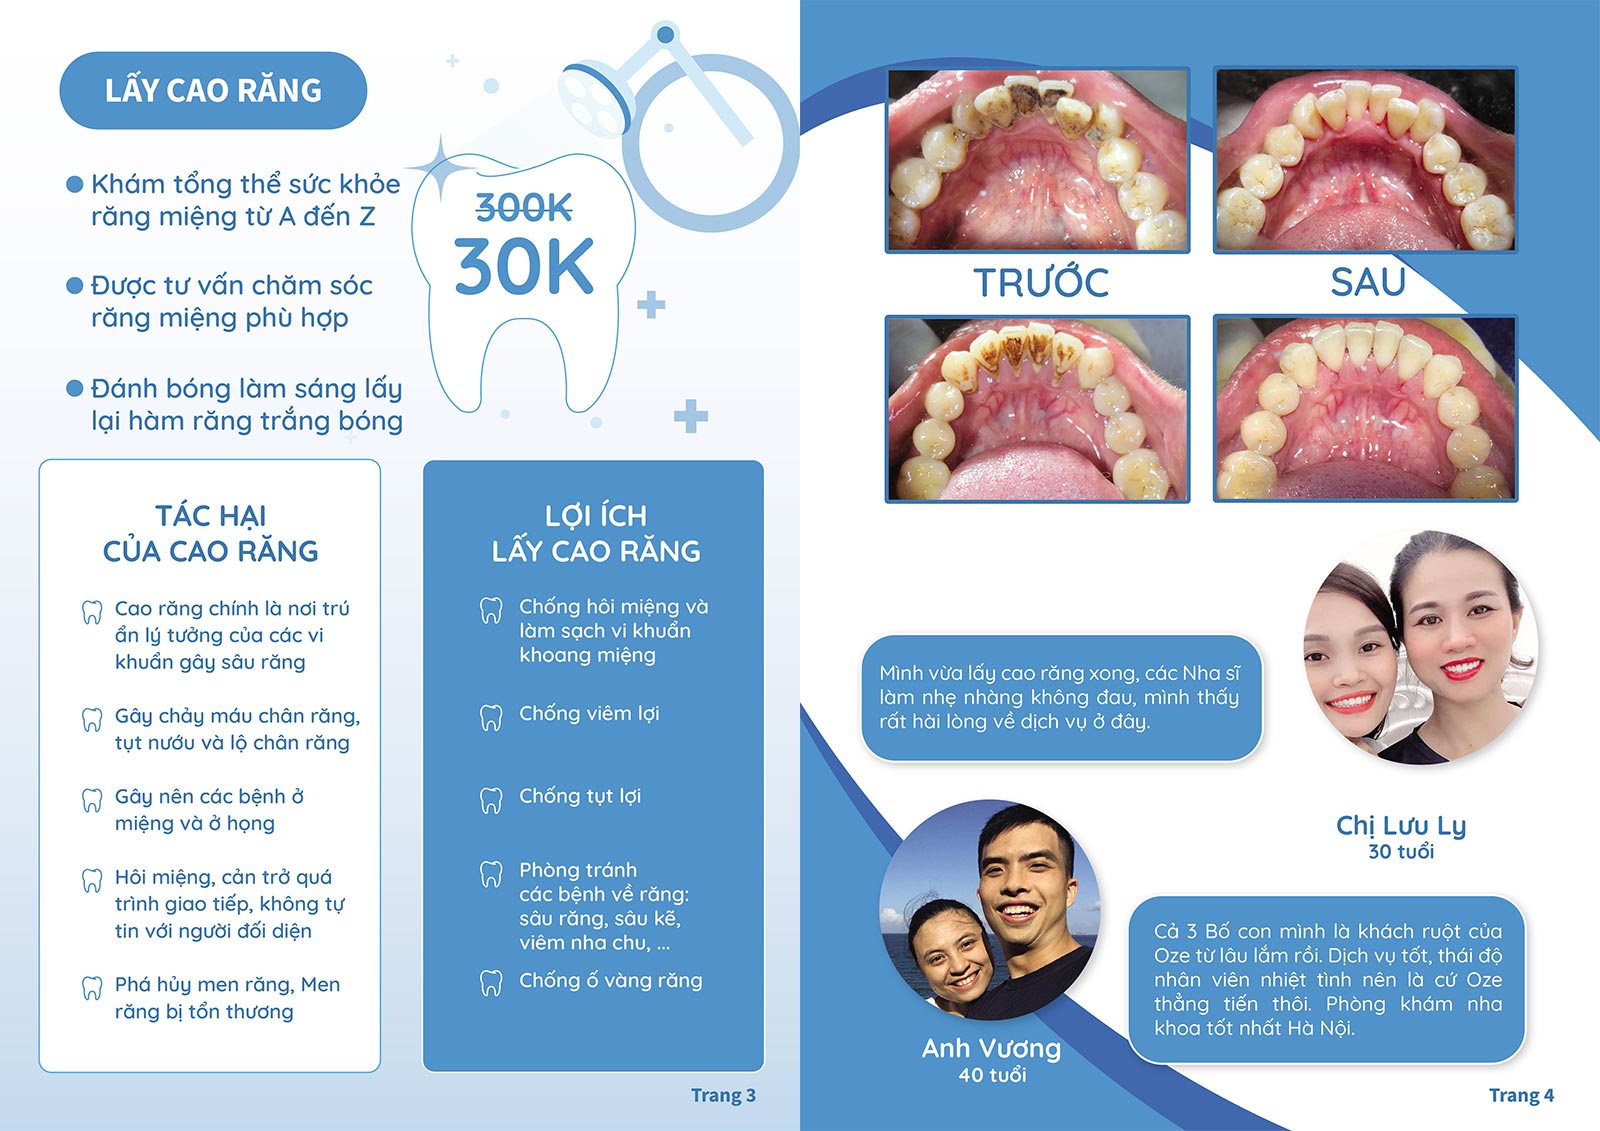 Lấy cao răng CỰC SỐC giá 30.000 đồng và cảm nhận của khách hàng trải nghiệm dịch vụ.